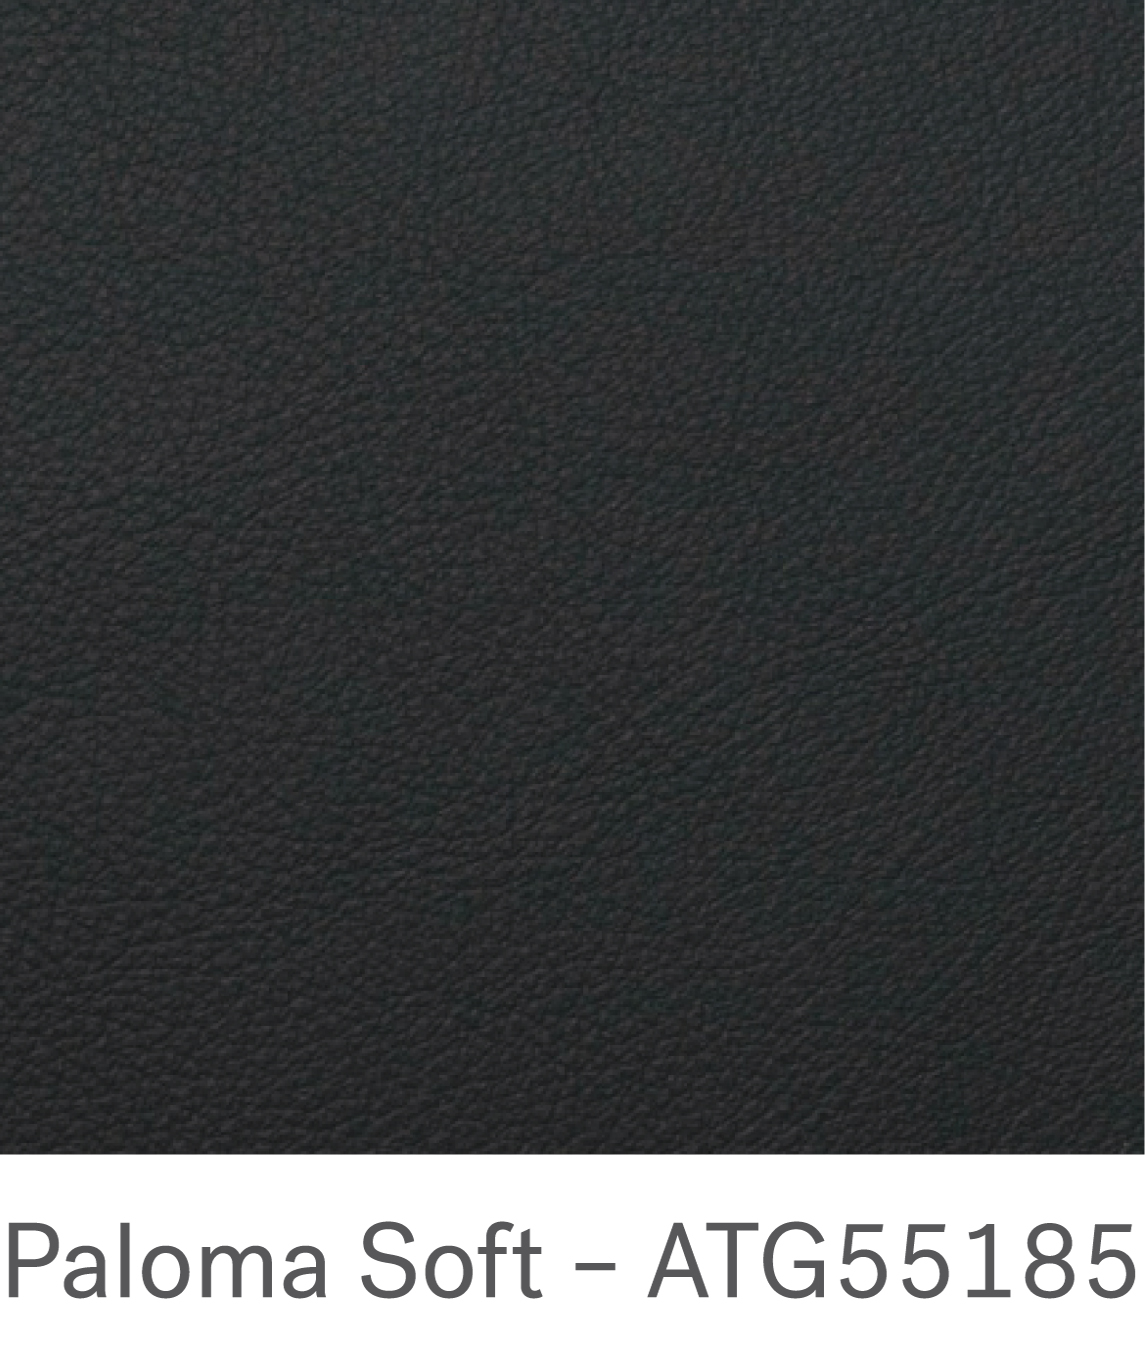 Paloma soft – ATG55185